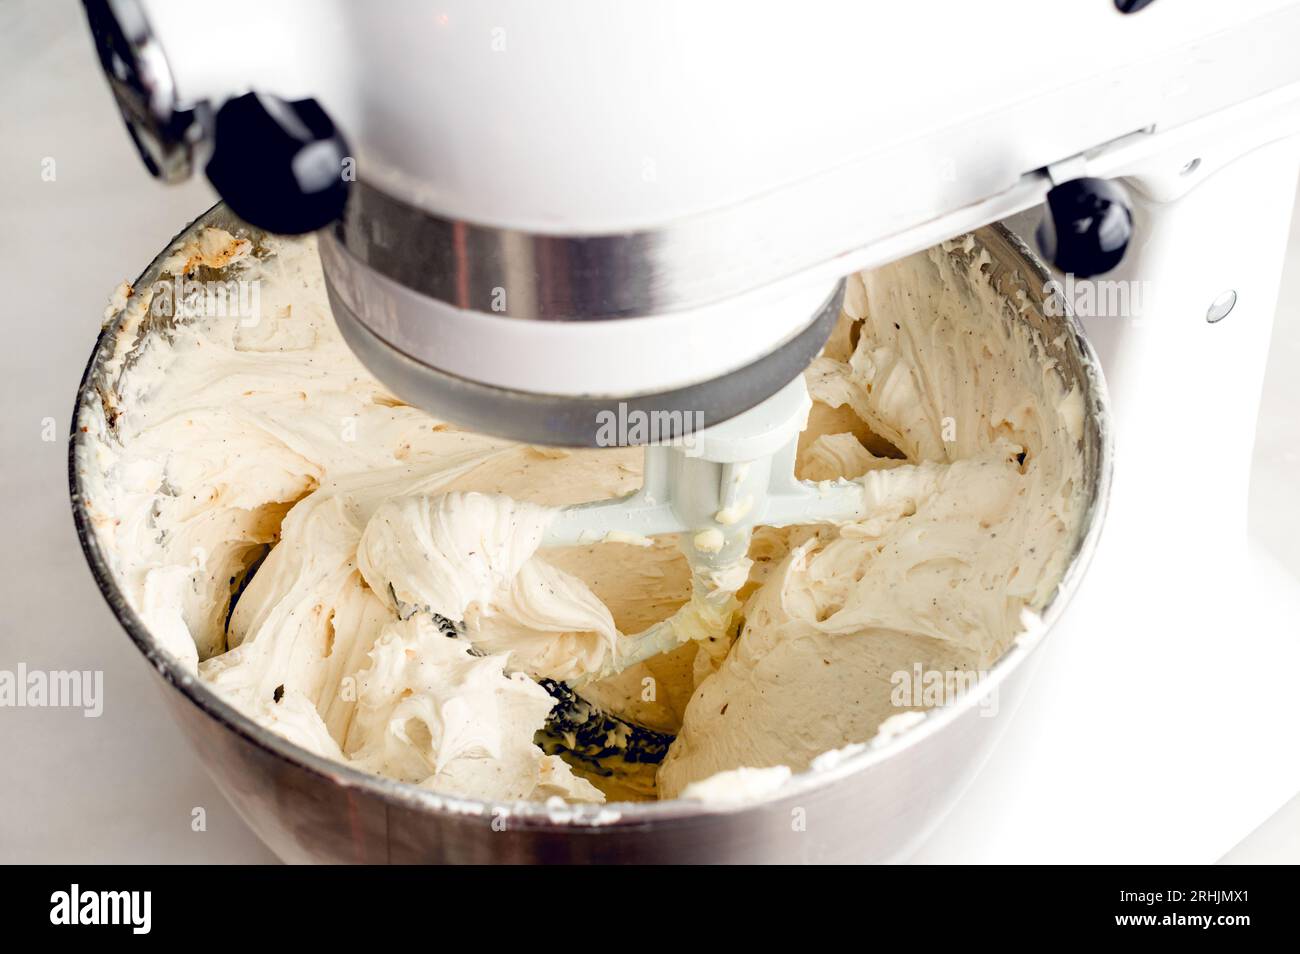 Mischen von Vanilla Buttercream-Zuckerguss in einem Standmixer Mixer: Zuckerguss in einem Standmixer mit Paddelaufsatz Stockfoto